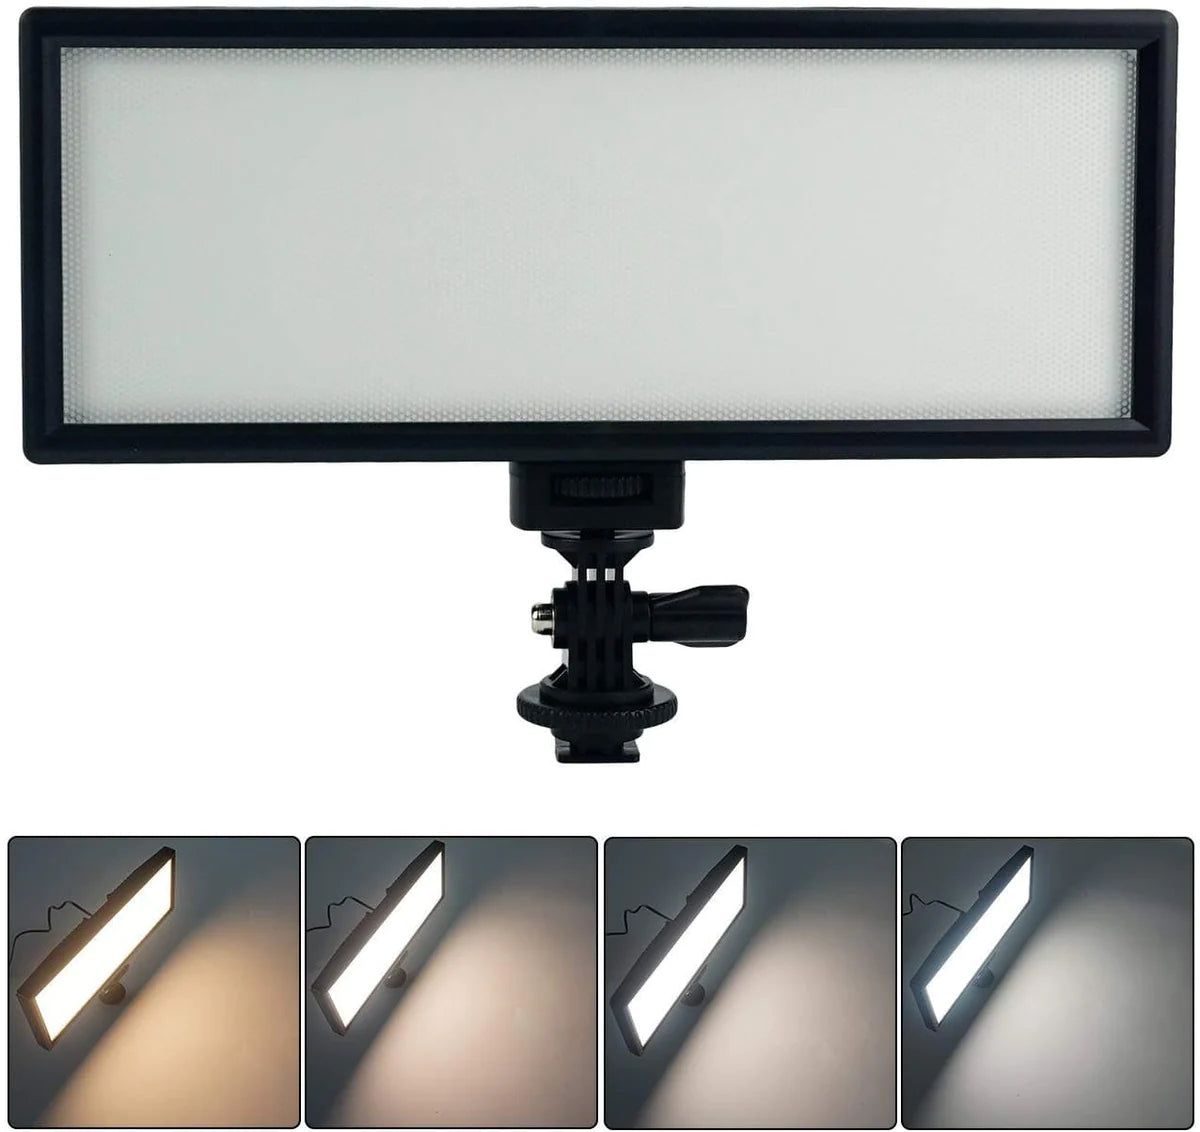 Panel LED Ultra delgado Bicolor VL-132T Viltrox